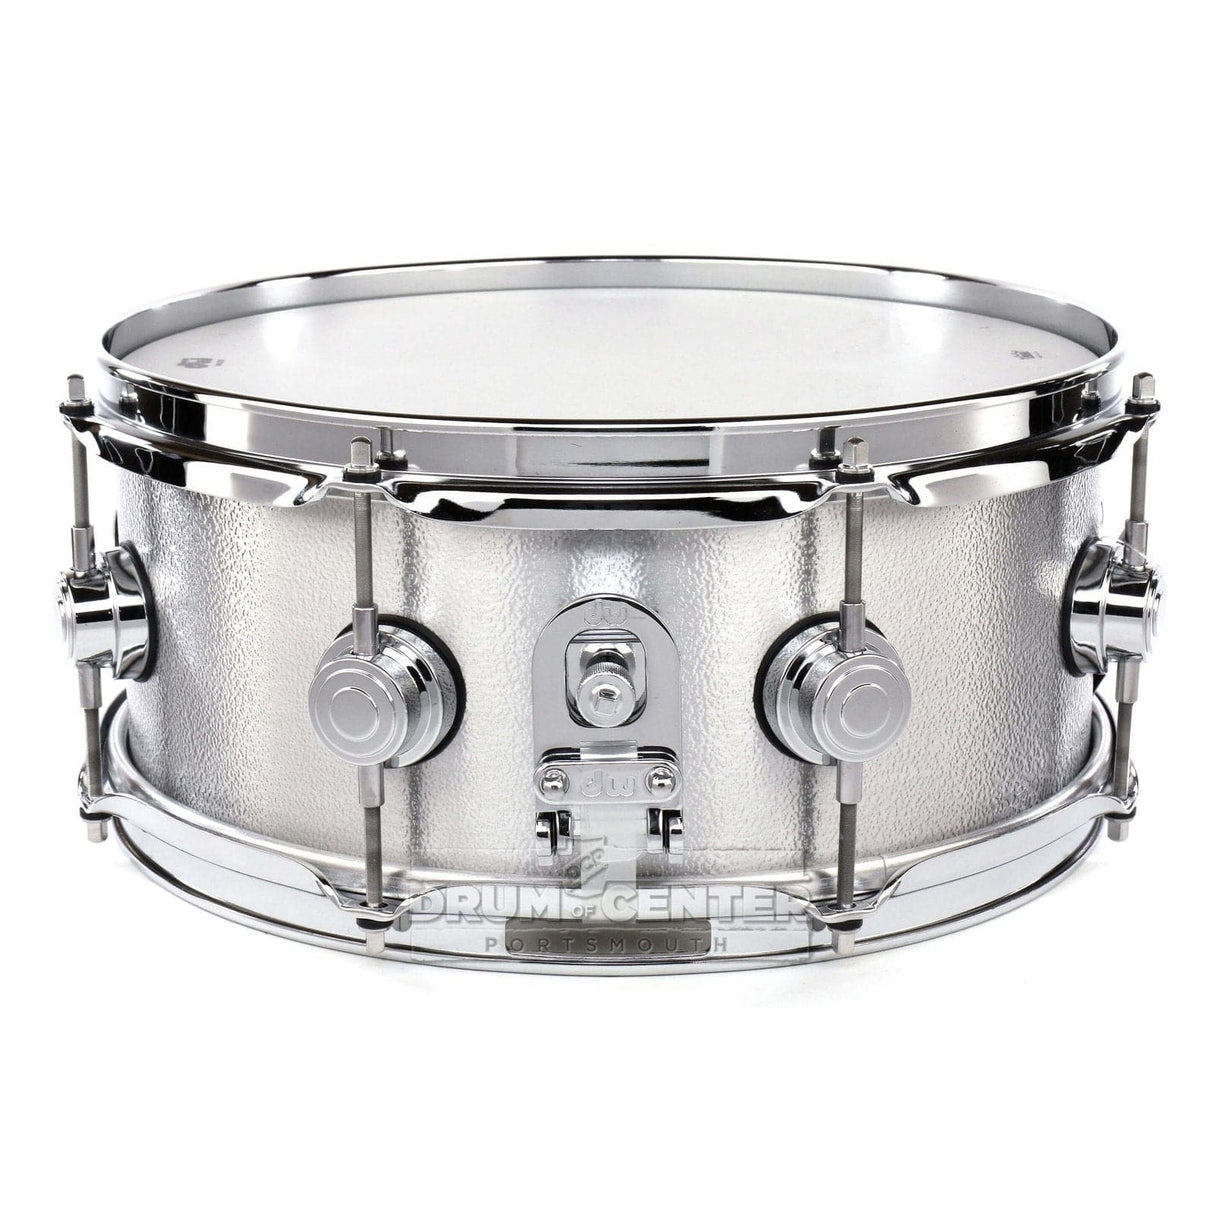 DW Collectors Cast Aluminum Snare Drum 13x5.5 Chrome Hardware